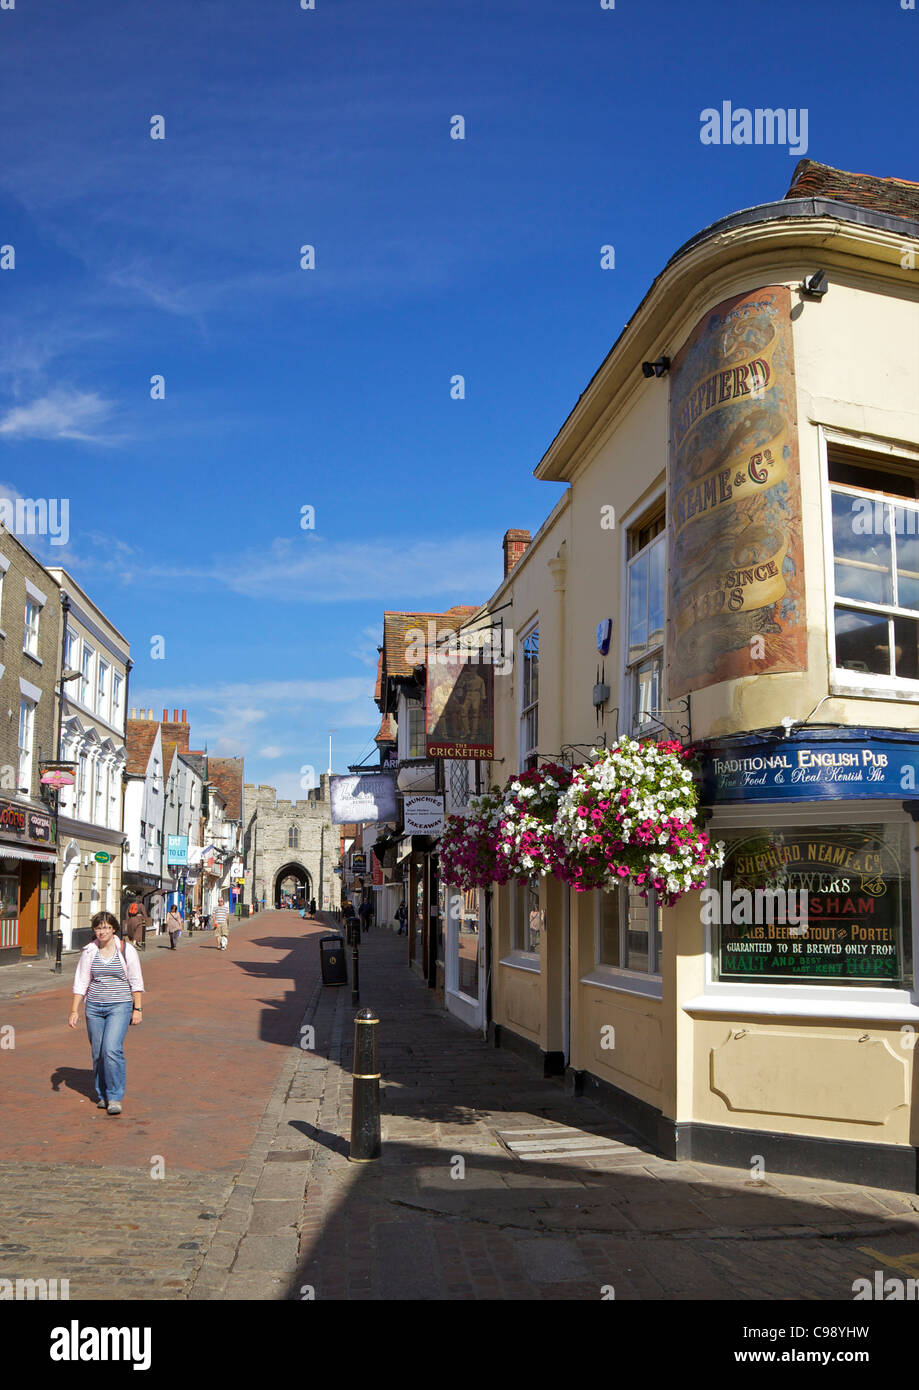 Le Cricketers pub, St Peters Street, à la recherche de Westgate, Canterbury, Kent, England, UK, Royaume-Uni, GO, Grande-Bretagne, BRI Banque D'Images